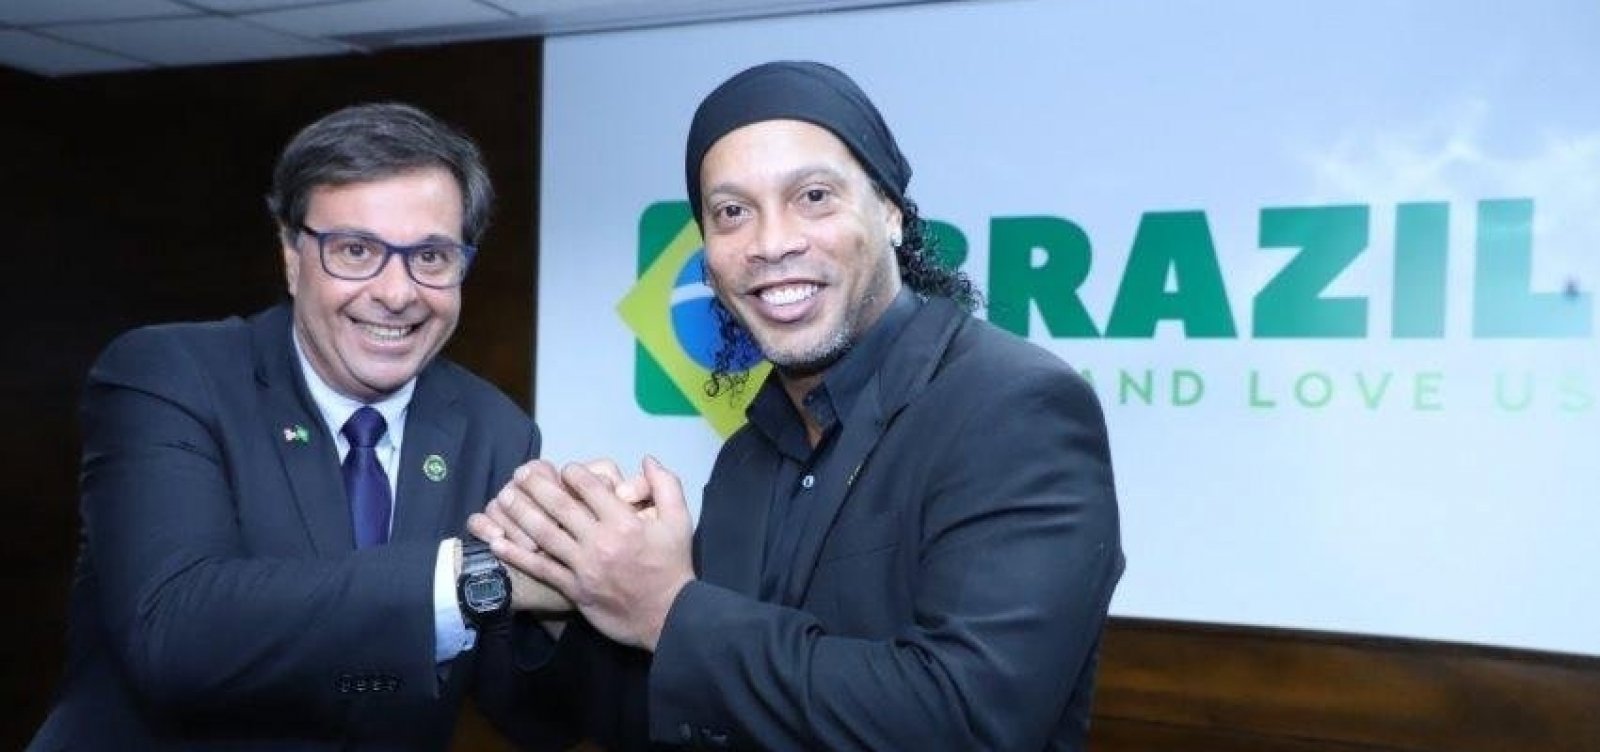 Com passaporte apreendido, Ronaldinho Gaúcho é nomeado embaixador do turismo